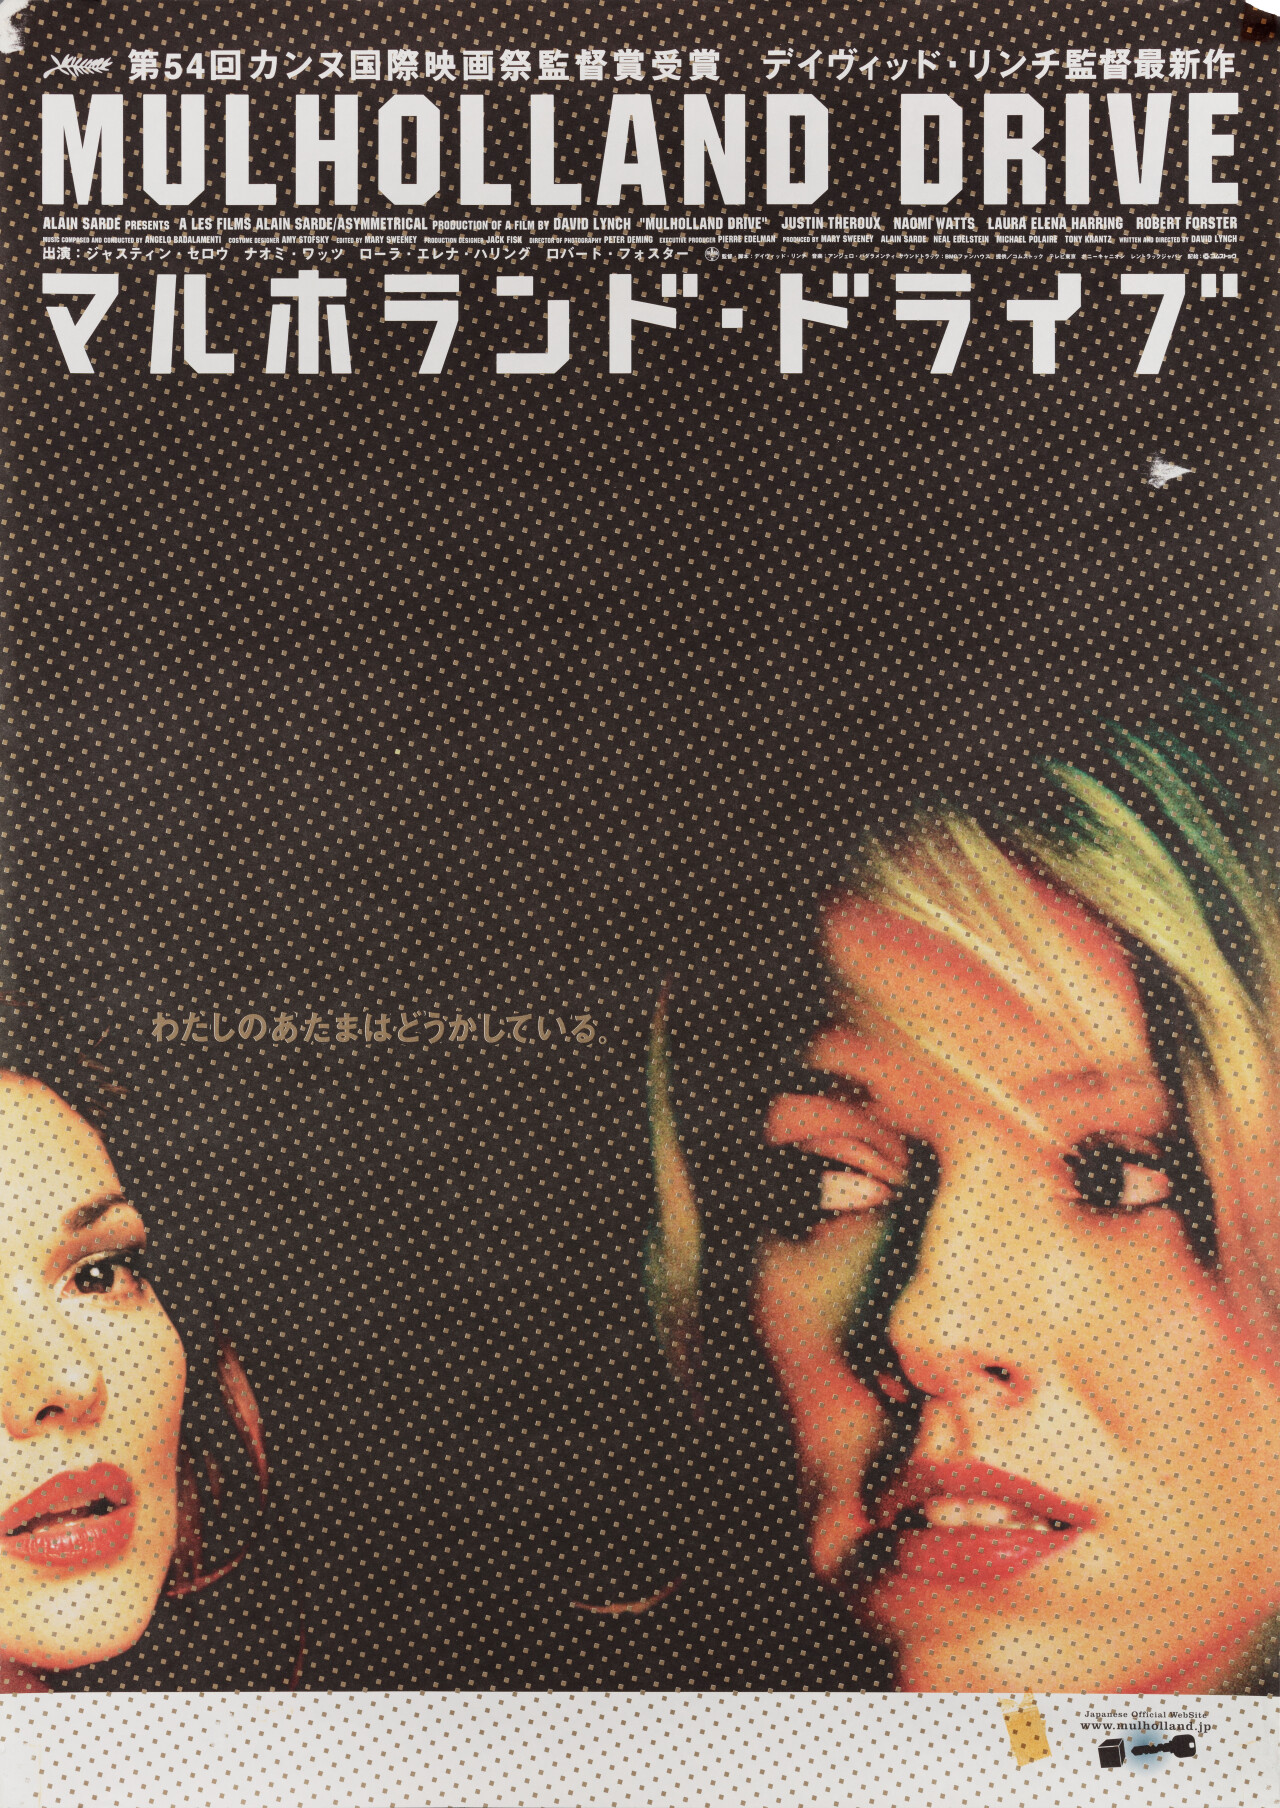 Малхолланд Драйв (Mulholland Drive, 2001), режиссёр Дэвид Линч, японский постер к фильму (графический дизайн, 2001 год)